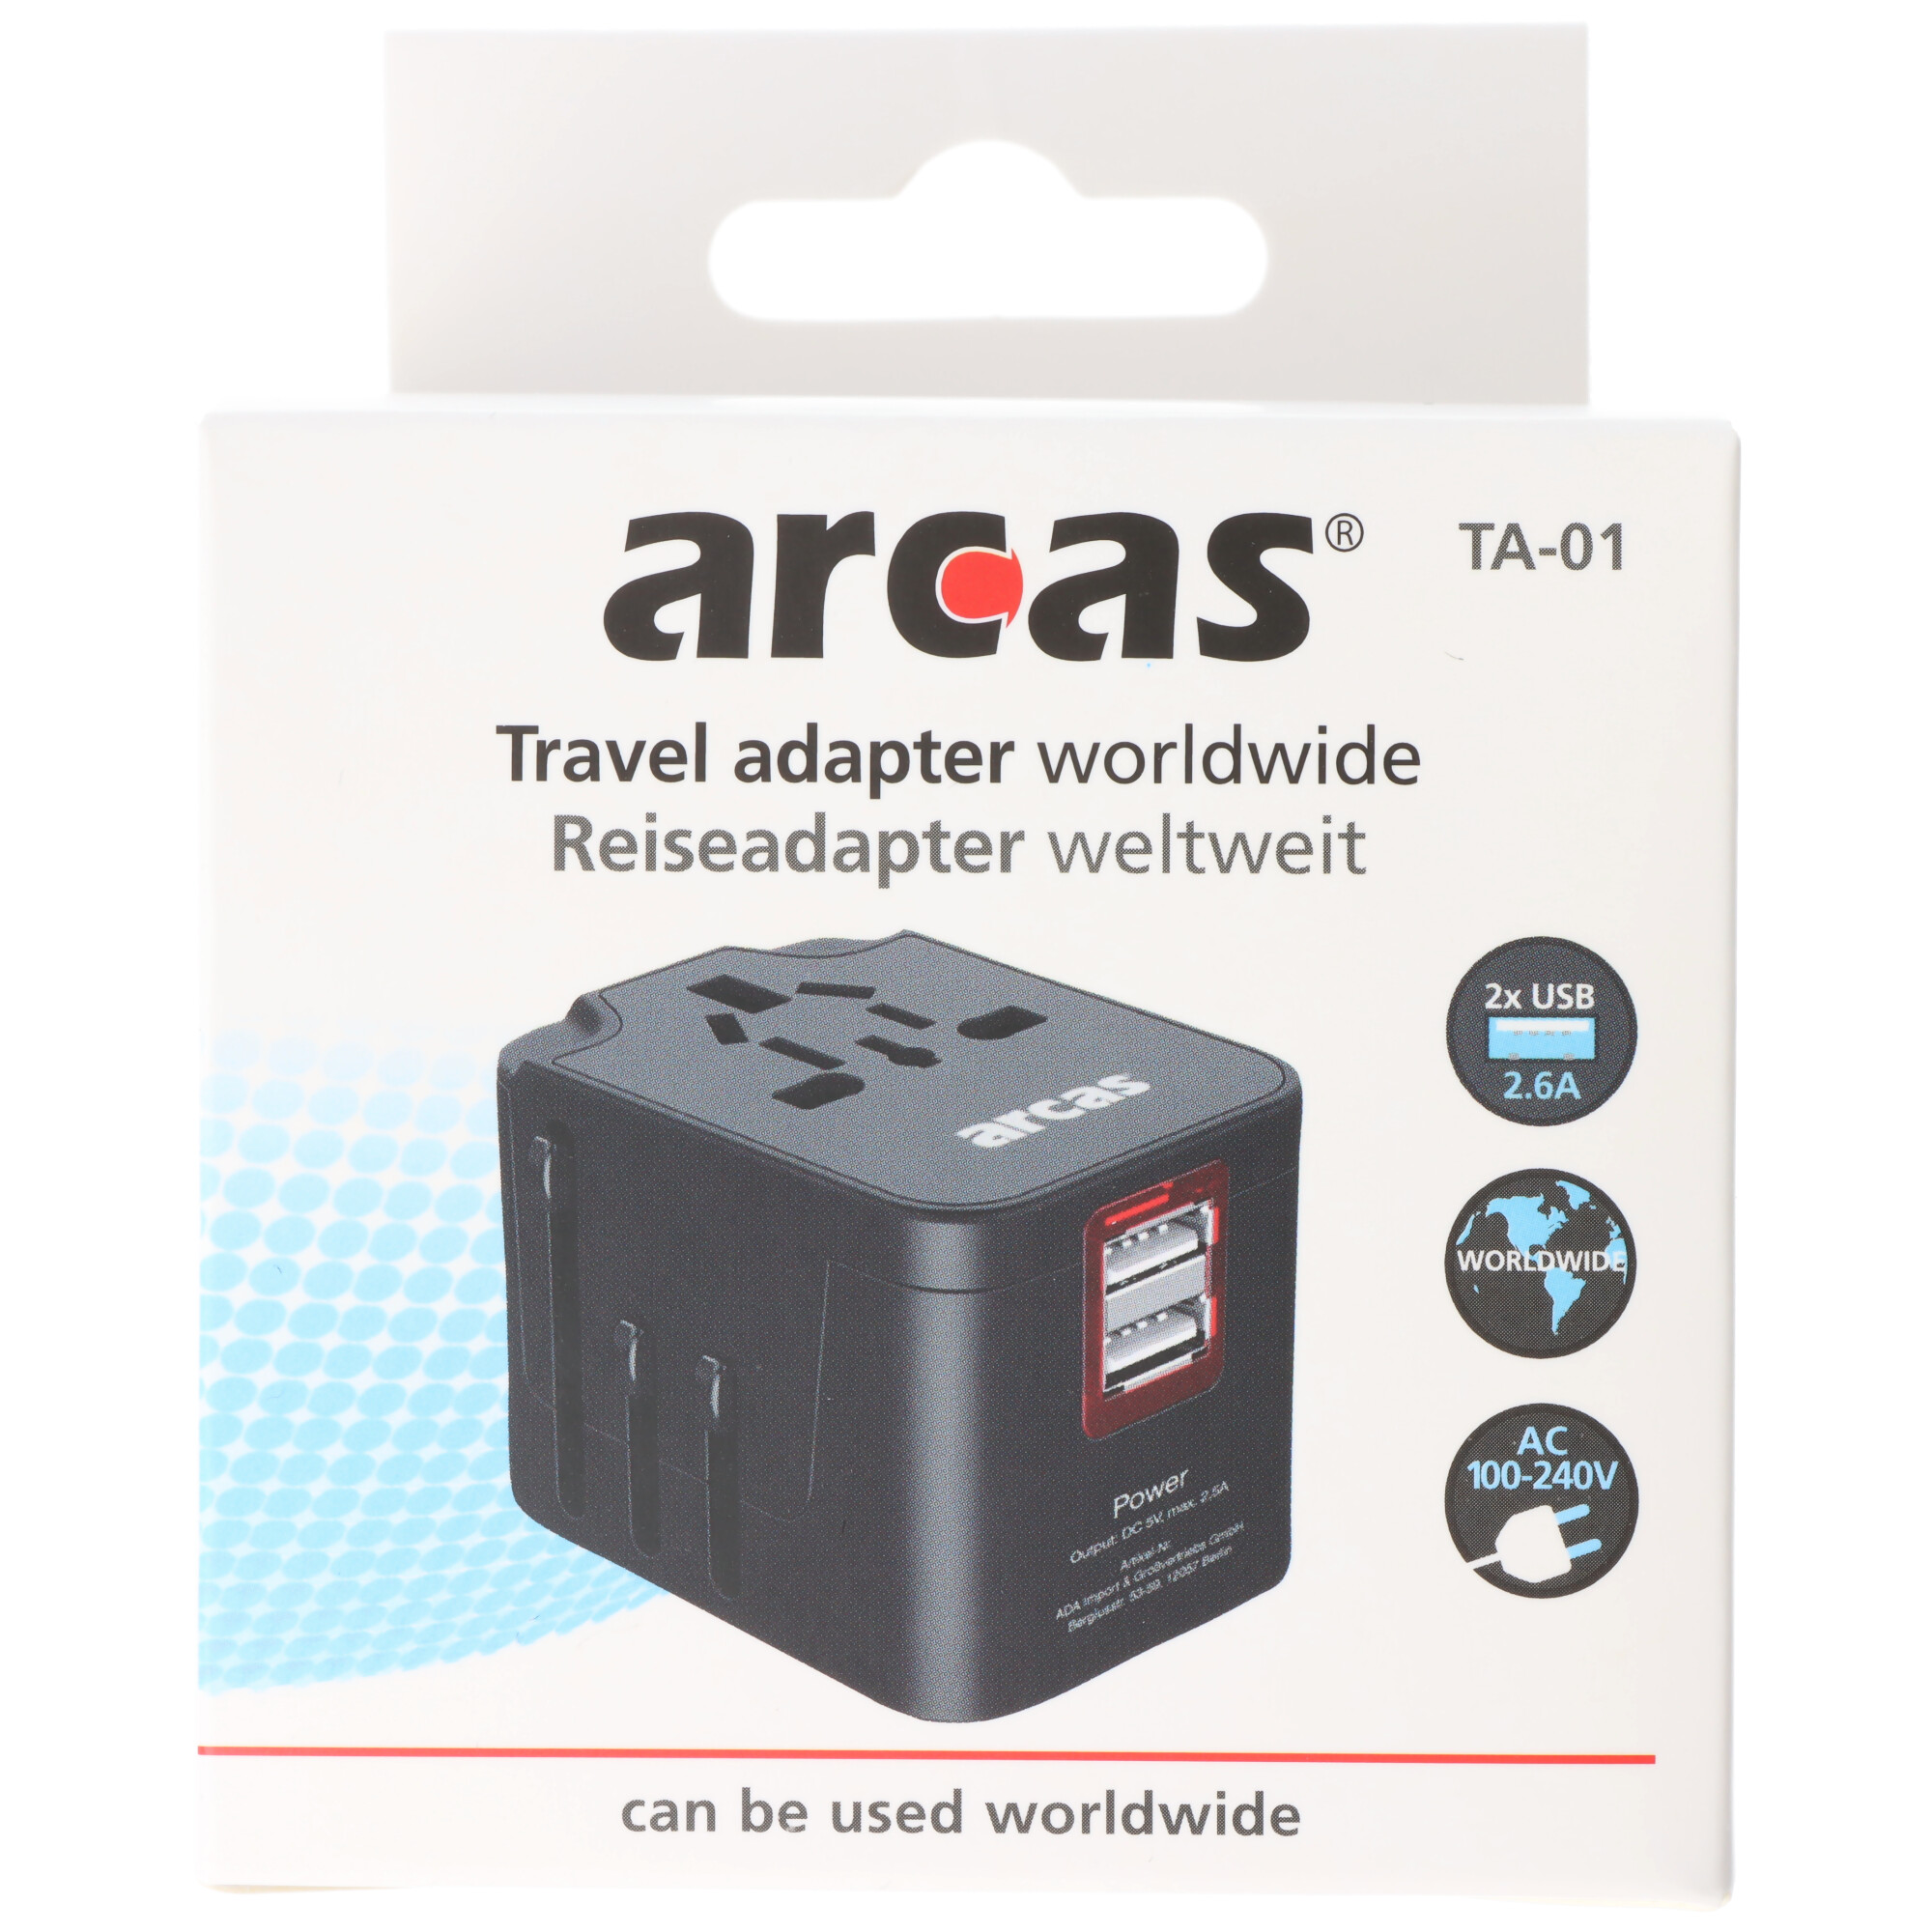 Arcas Reiseadapter TA-01 weltweit, Nutzung in mehr als 150 Ländern, mit praktischem Reiseetui